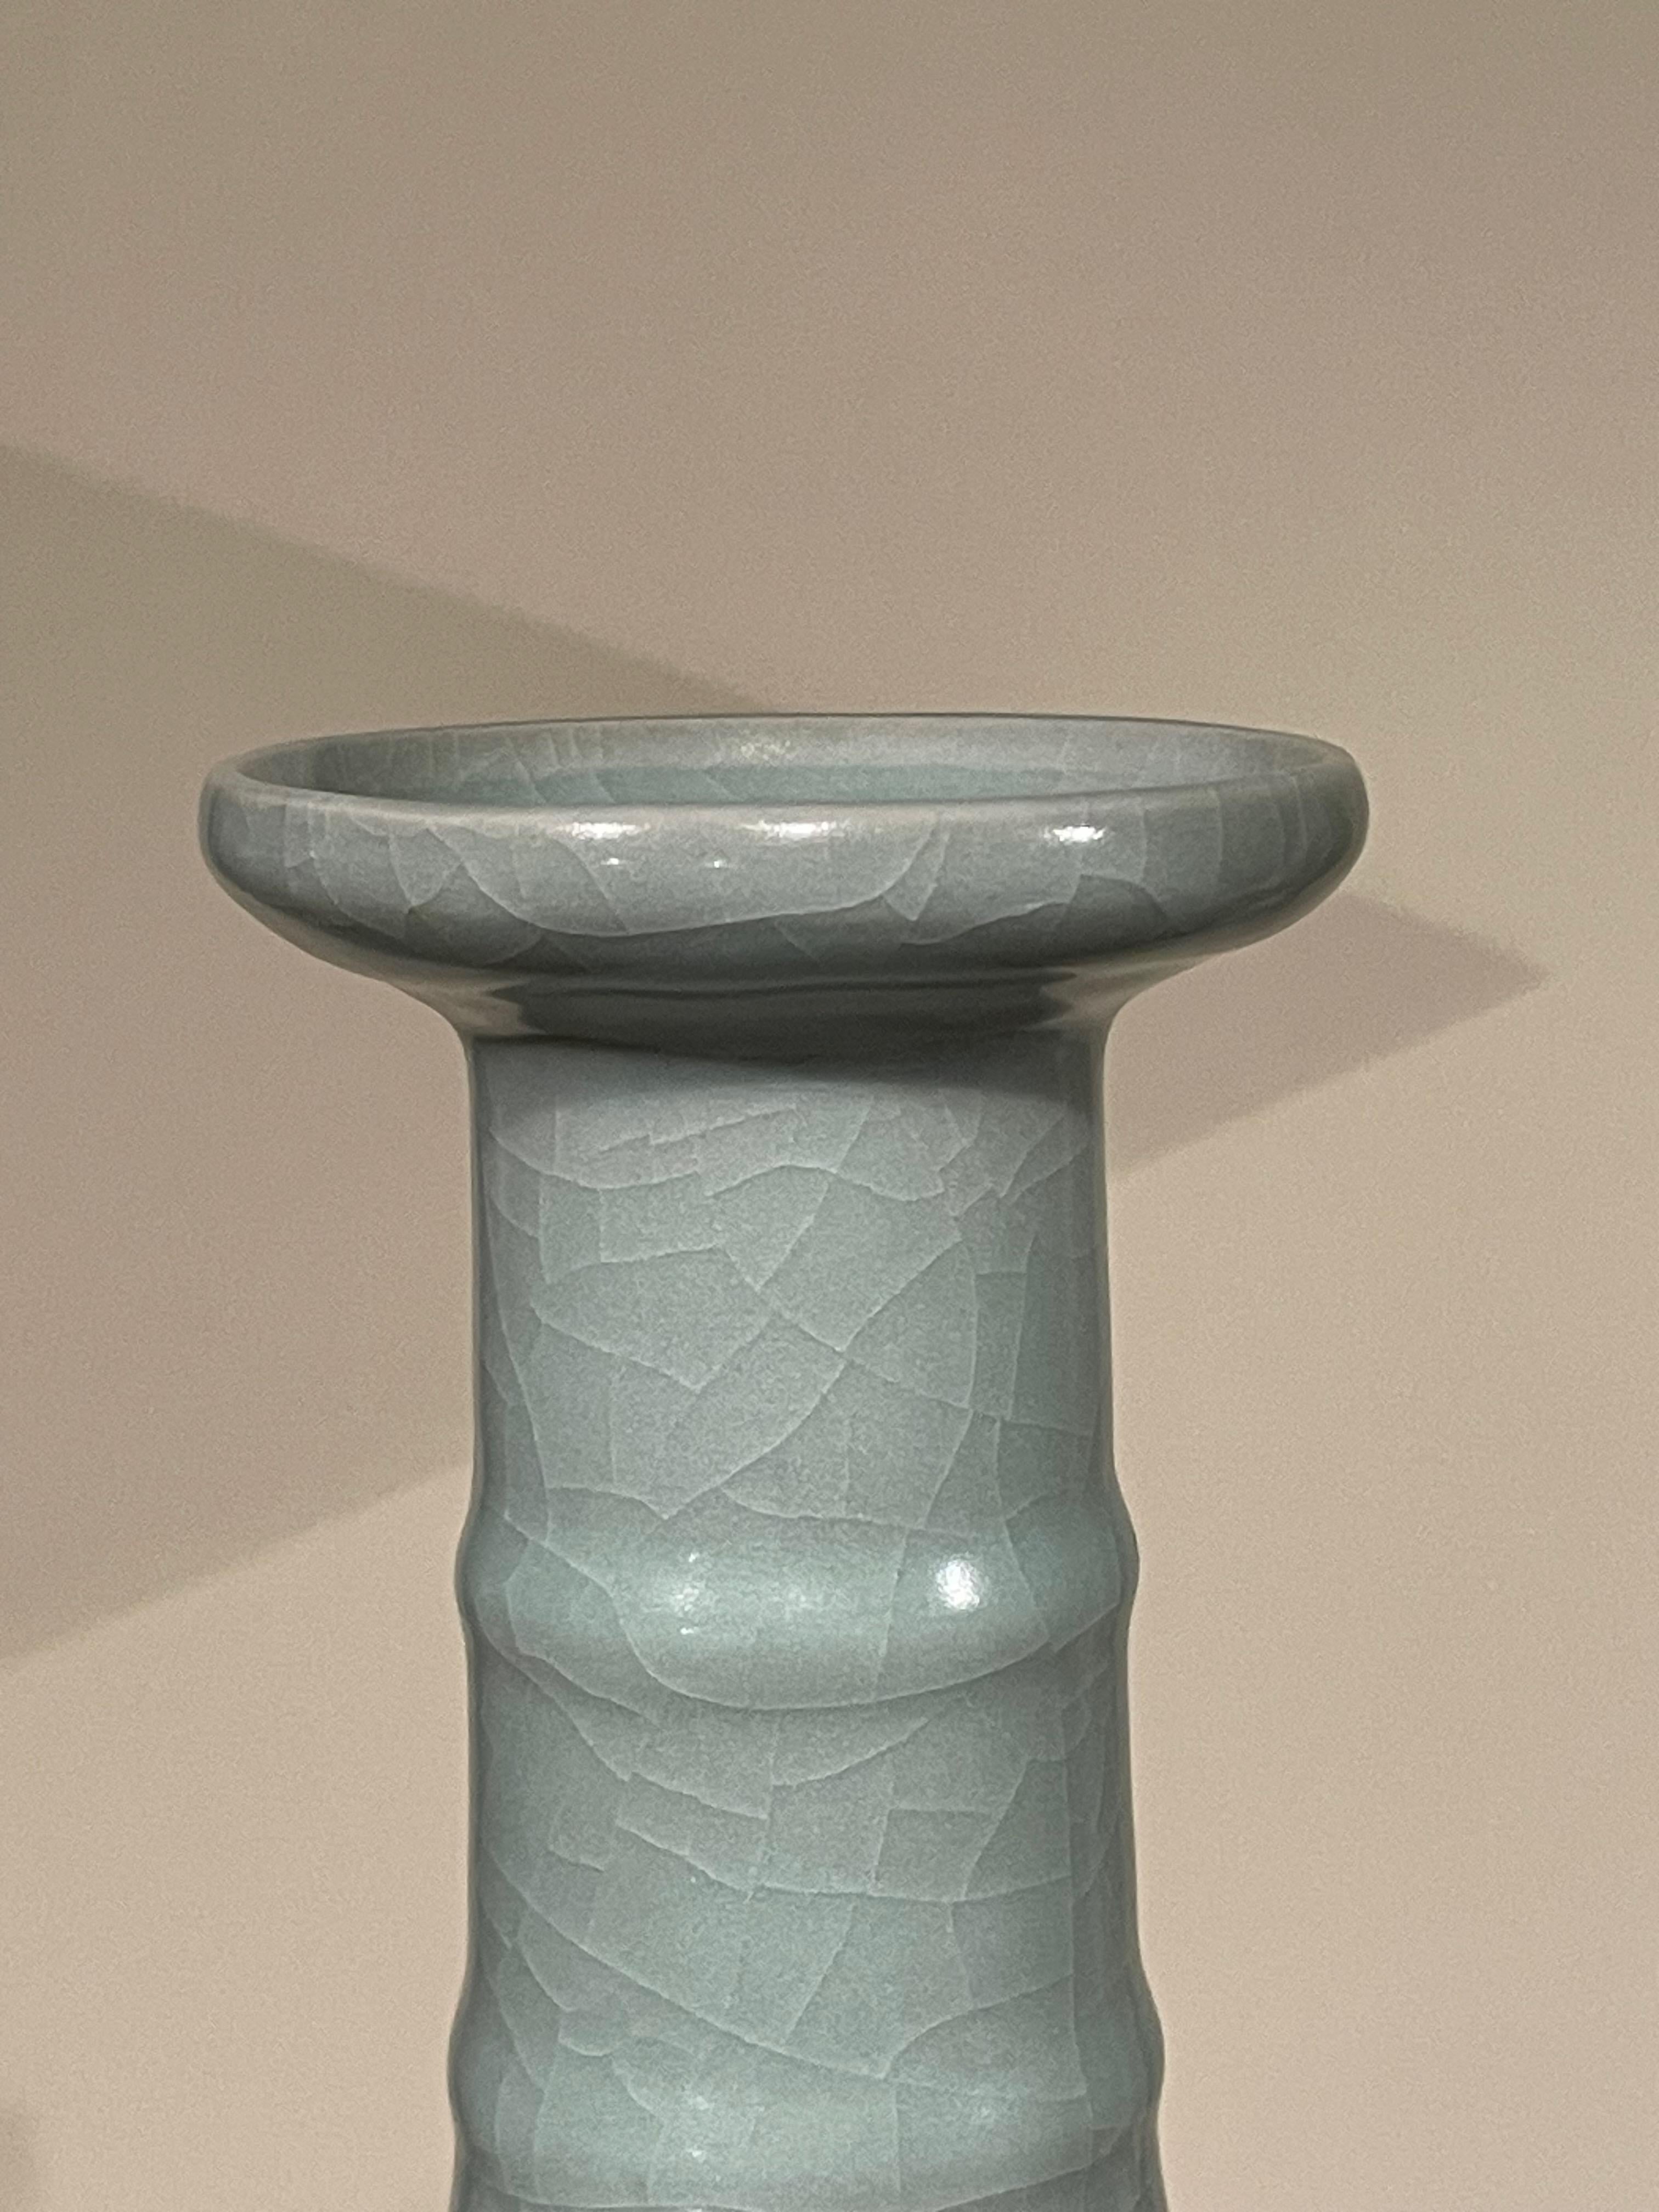 Vase contemporain chinois de couleur turquoise pâle.
Encolure haute avec détails en côtes horizontales.
Une large collection est disponible avec des tailles et des formes variées.
ARRIVÉE AVRIL